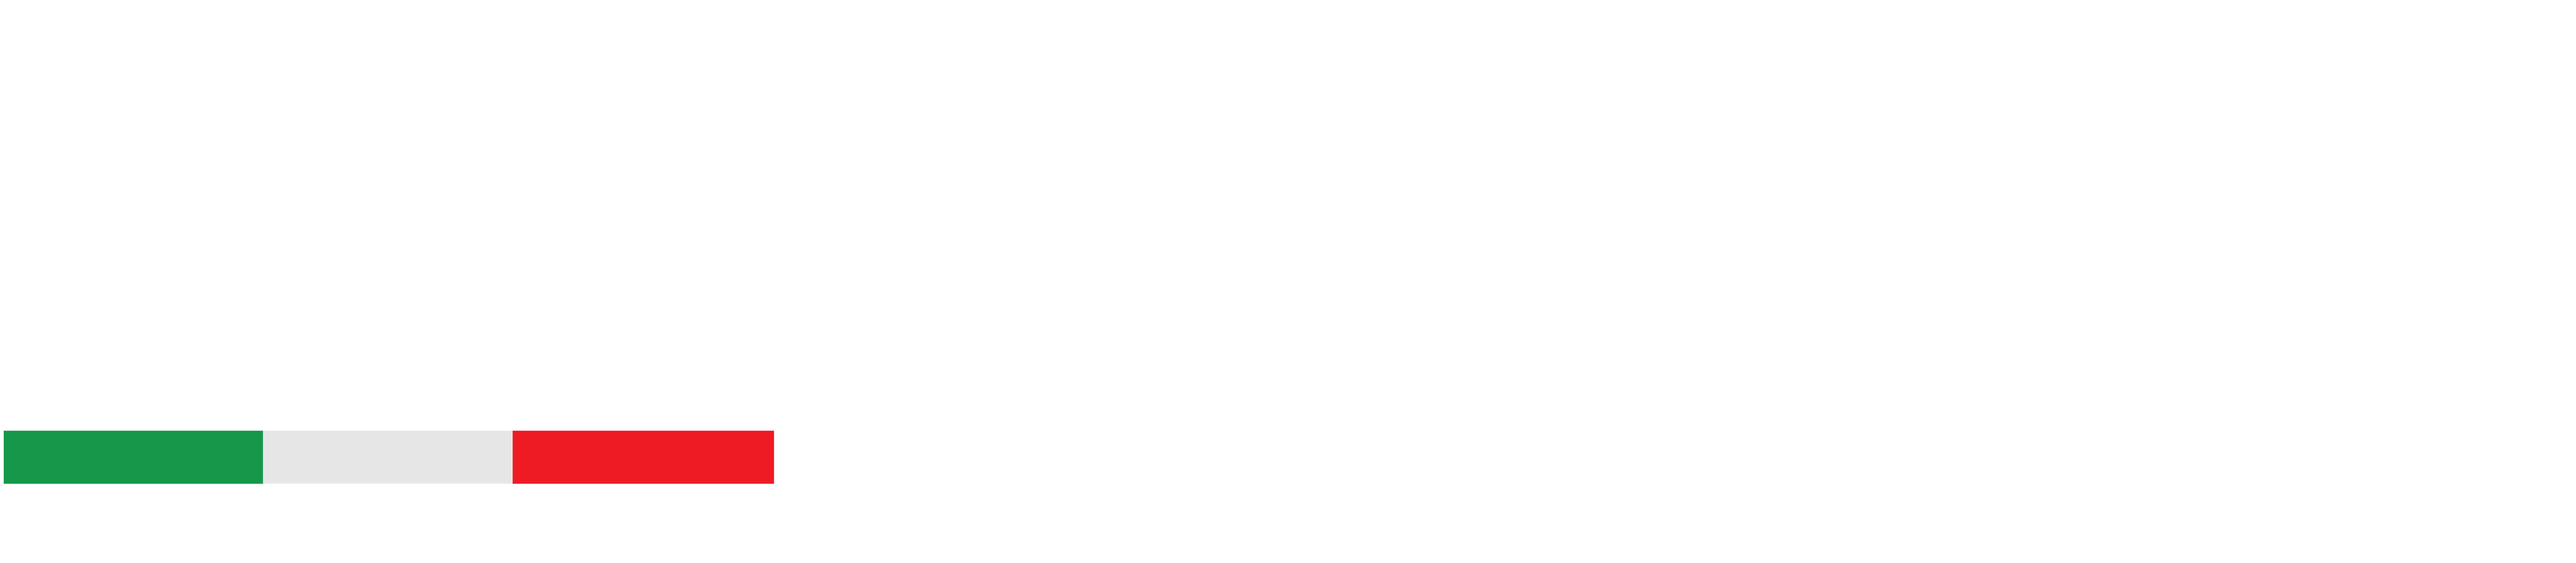 logo-meetforum-white